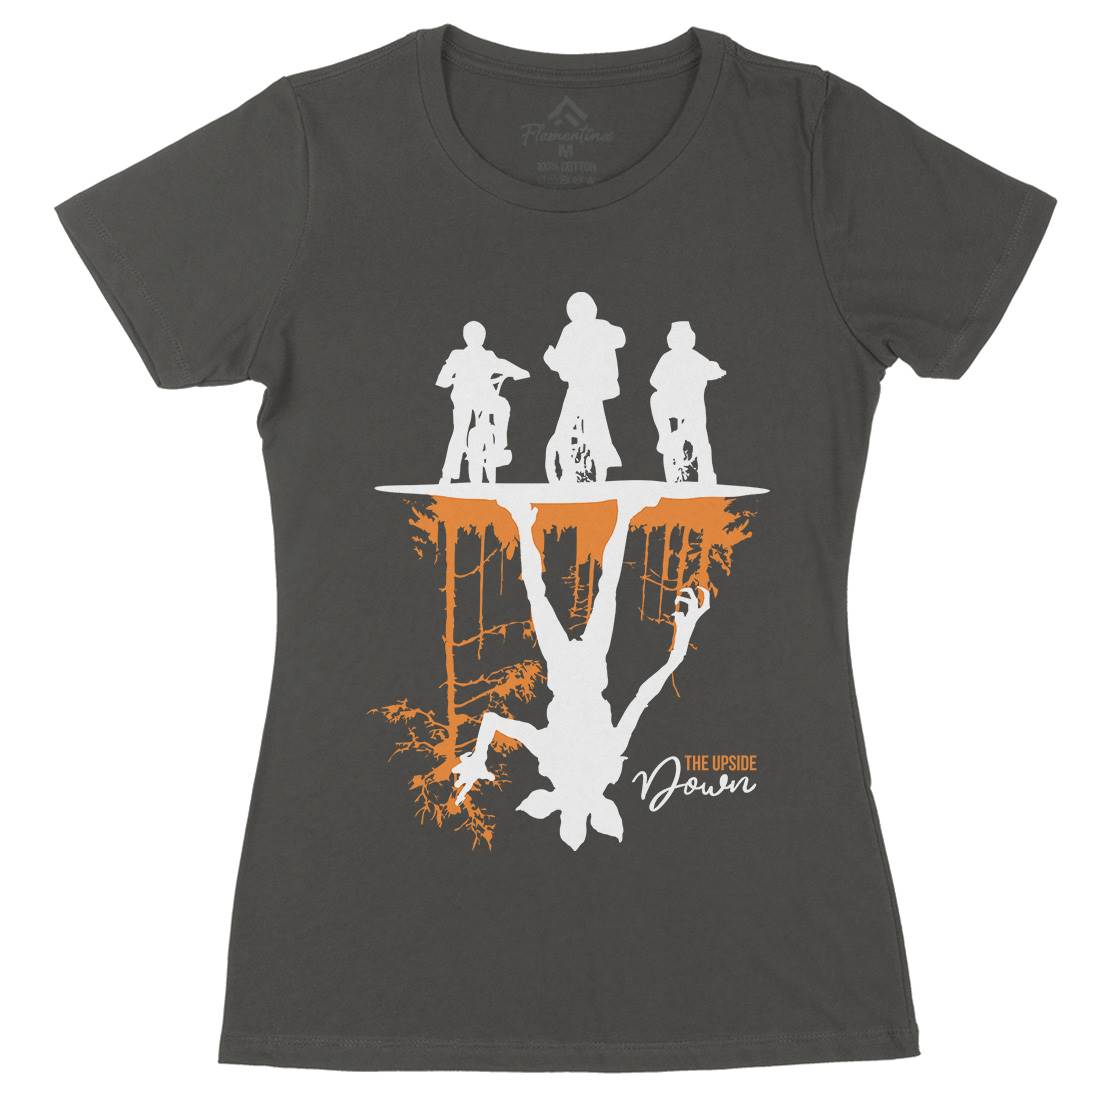 Upside Down Womens Organic Crew Neck T-Shirt Horror D124